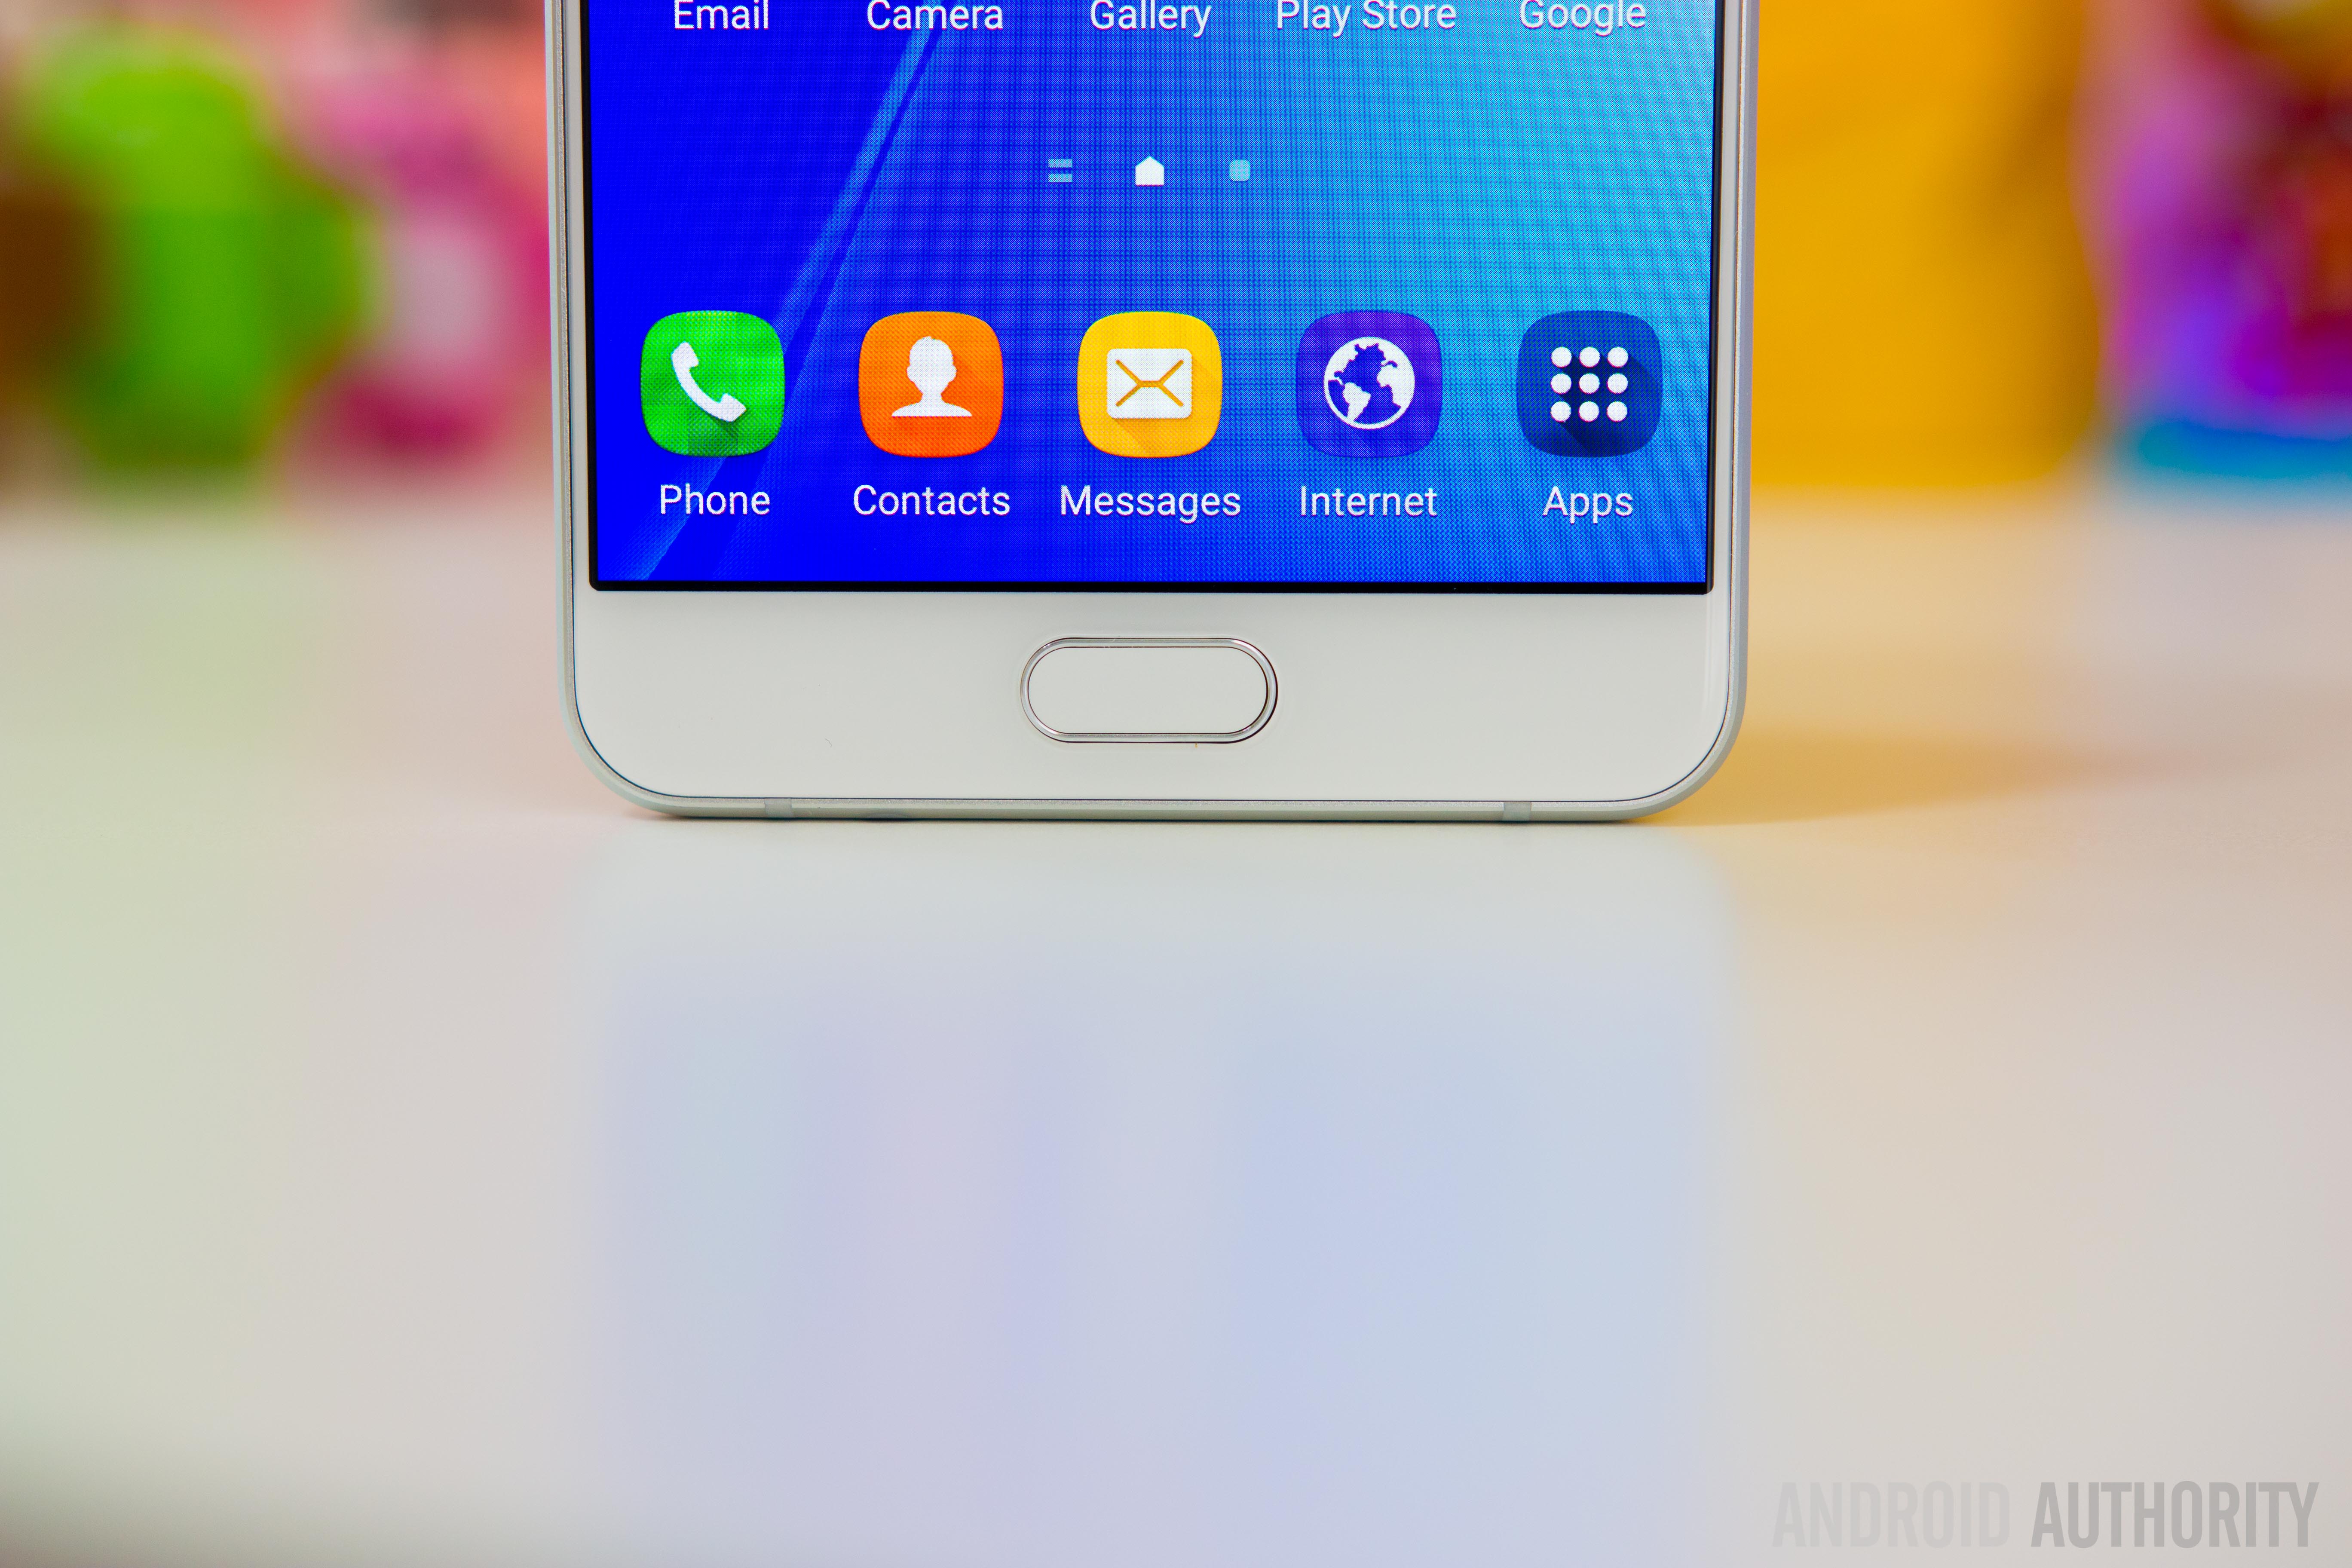 Samsung Galaxy A7-9